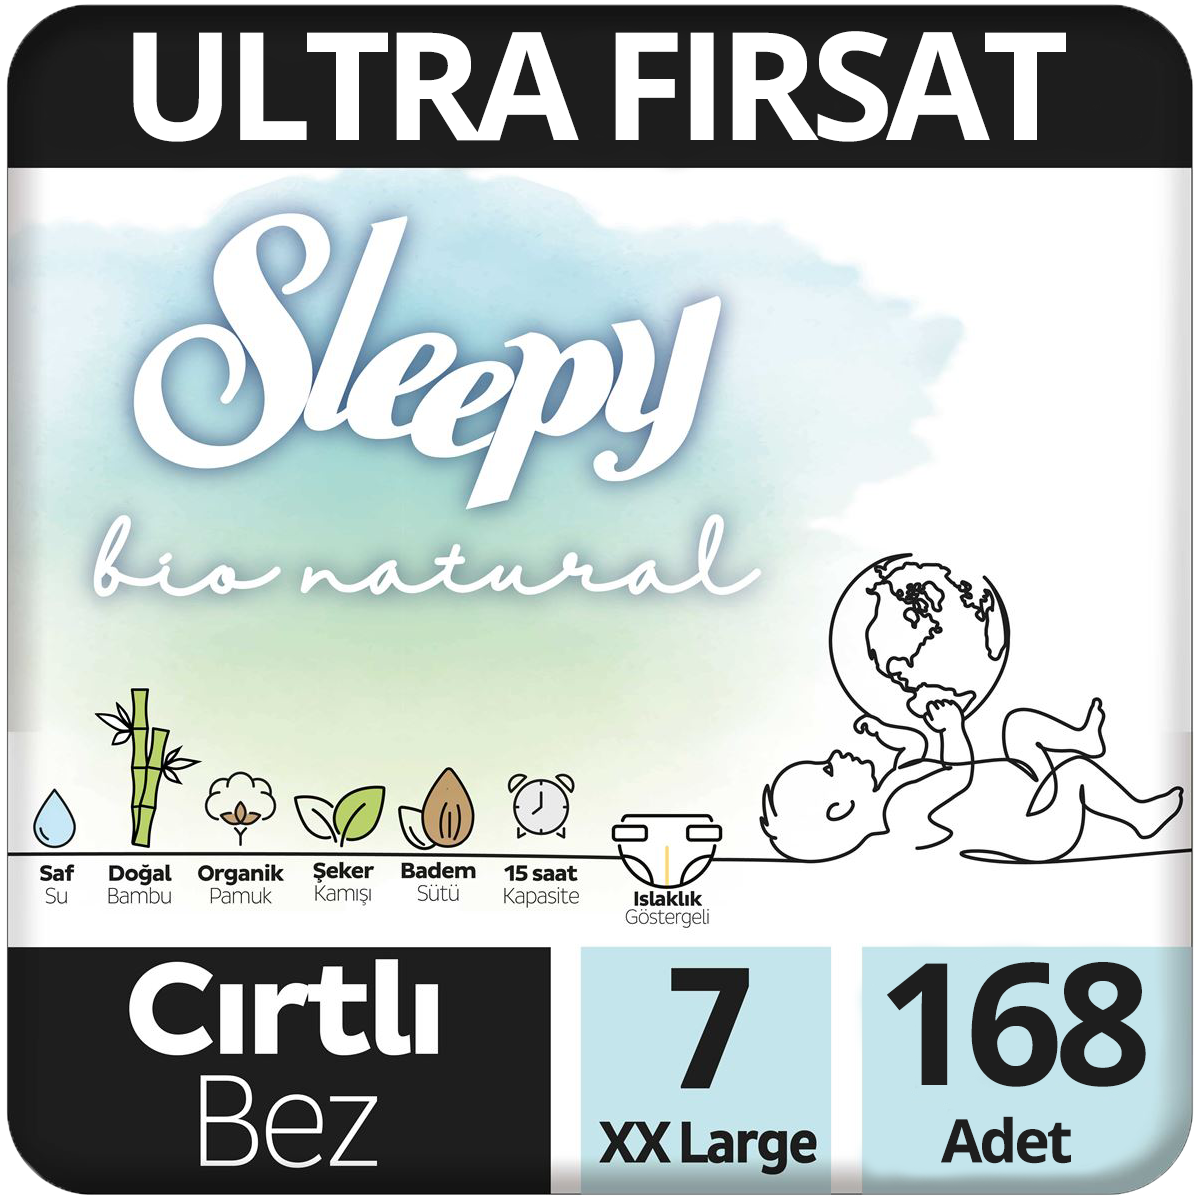 Sleepy Bio Natural Bebek Bezi 7 Beden Ultra Fırsat Paketi 56x3 168 Adet